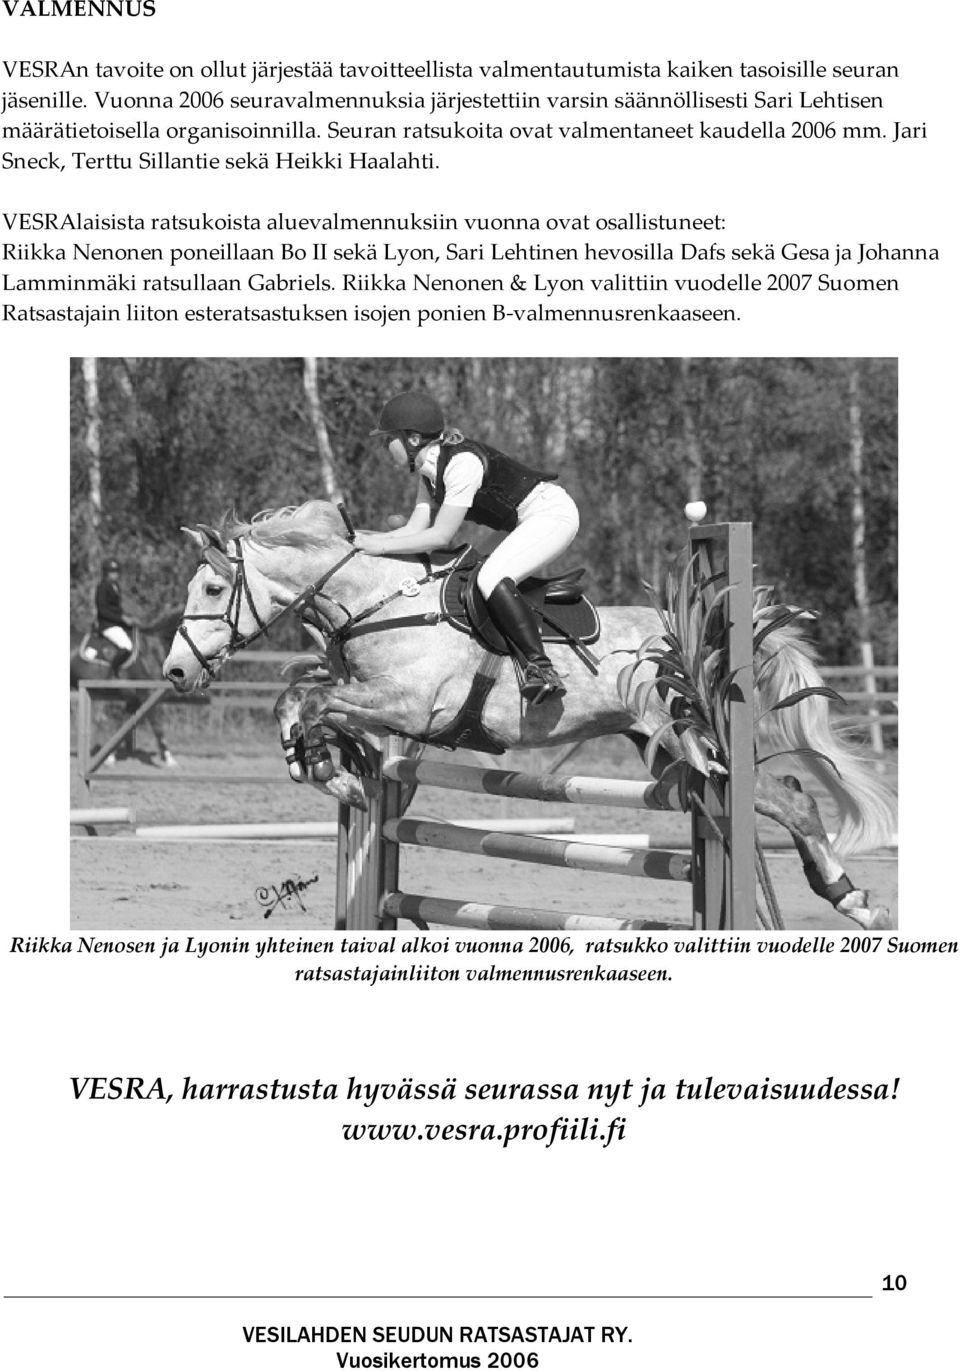 Jari Sneck, Terttu Sillantie sekä Heikki Haalahti.